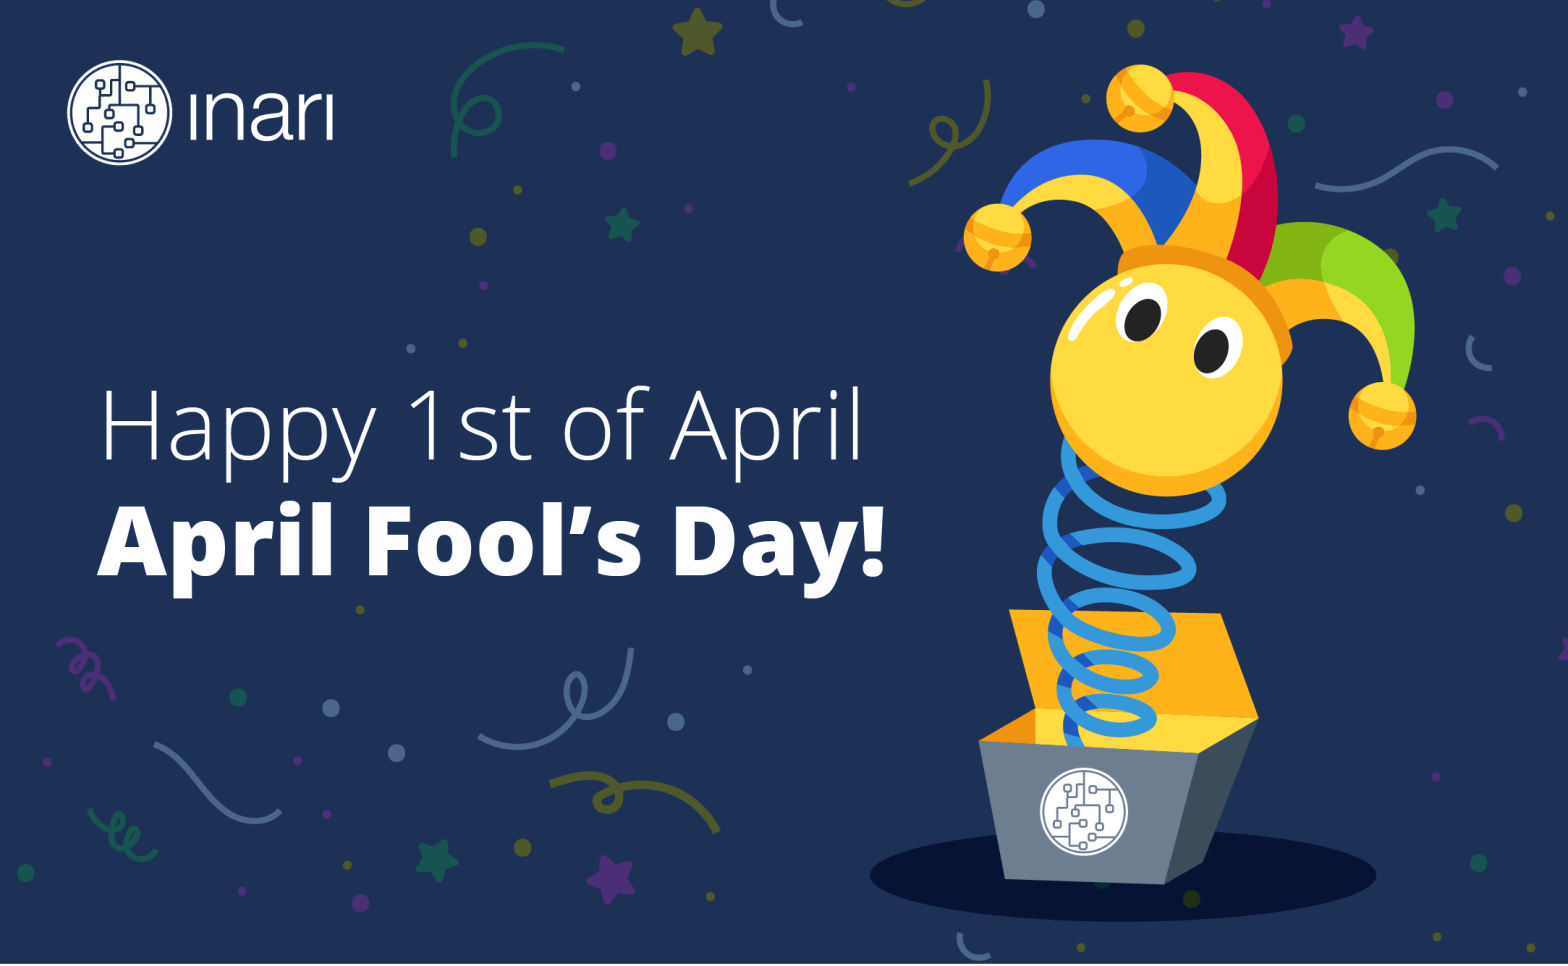 Happy April Fools’ day!